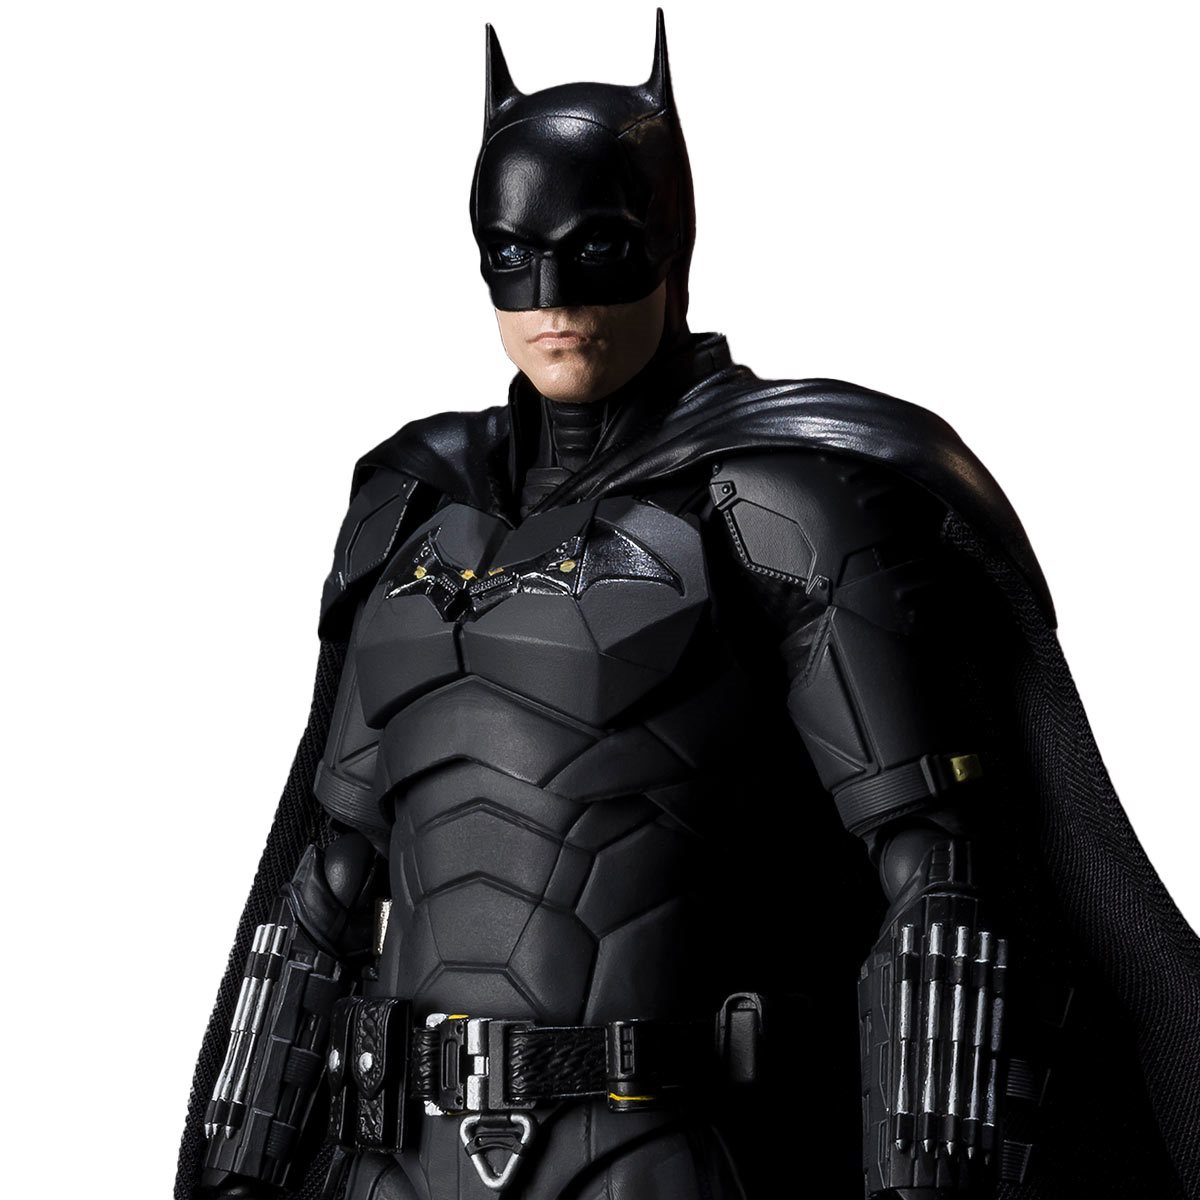 S.H.Figuarts Batman Justice League Bruce Wayne SHF Action Figure Toy 6'' New 